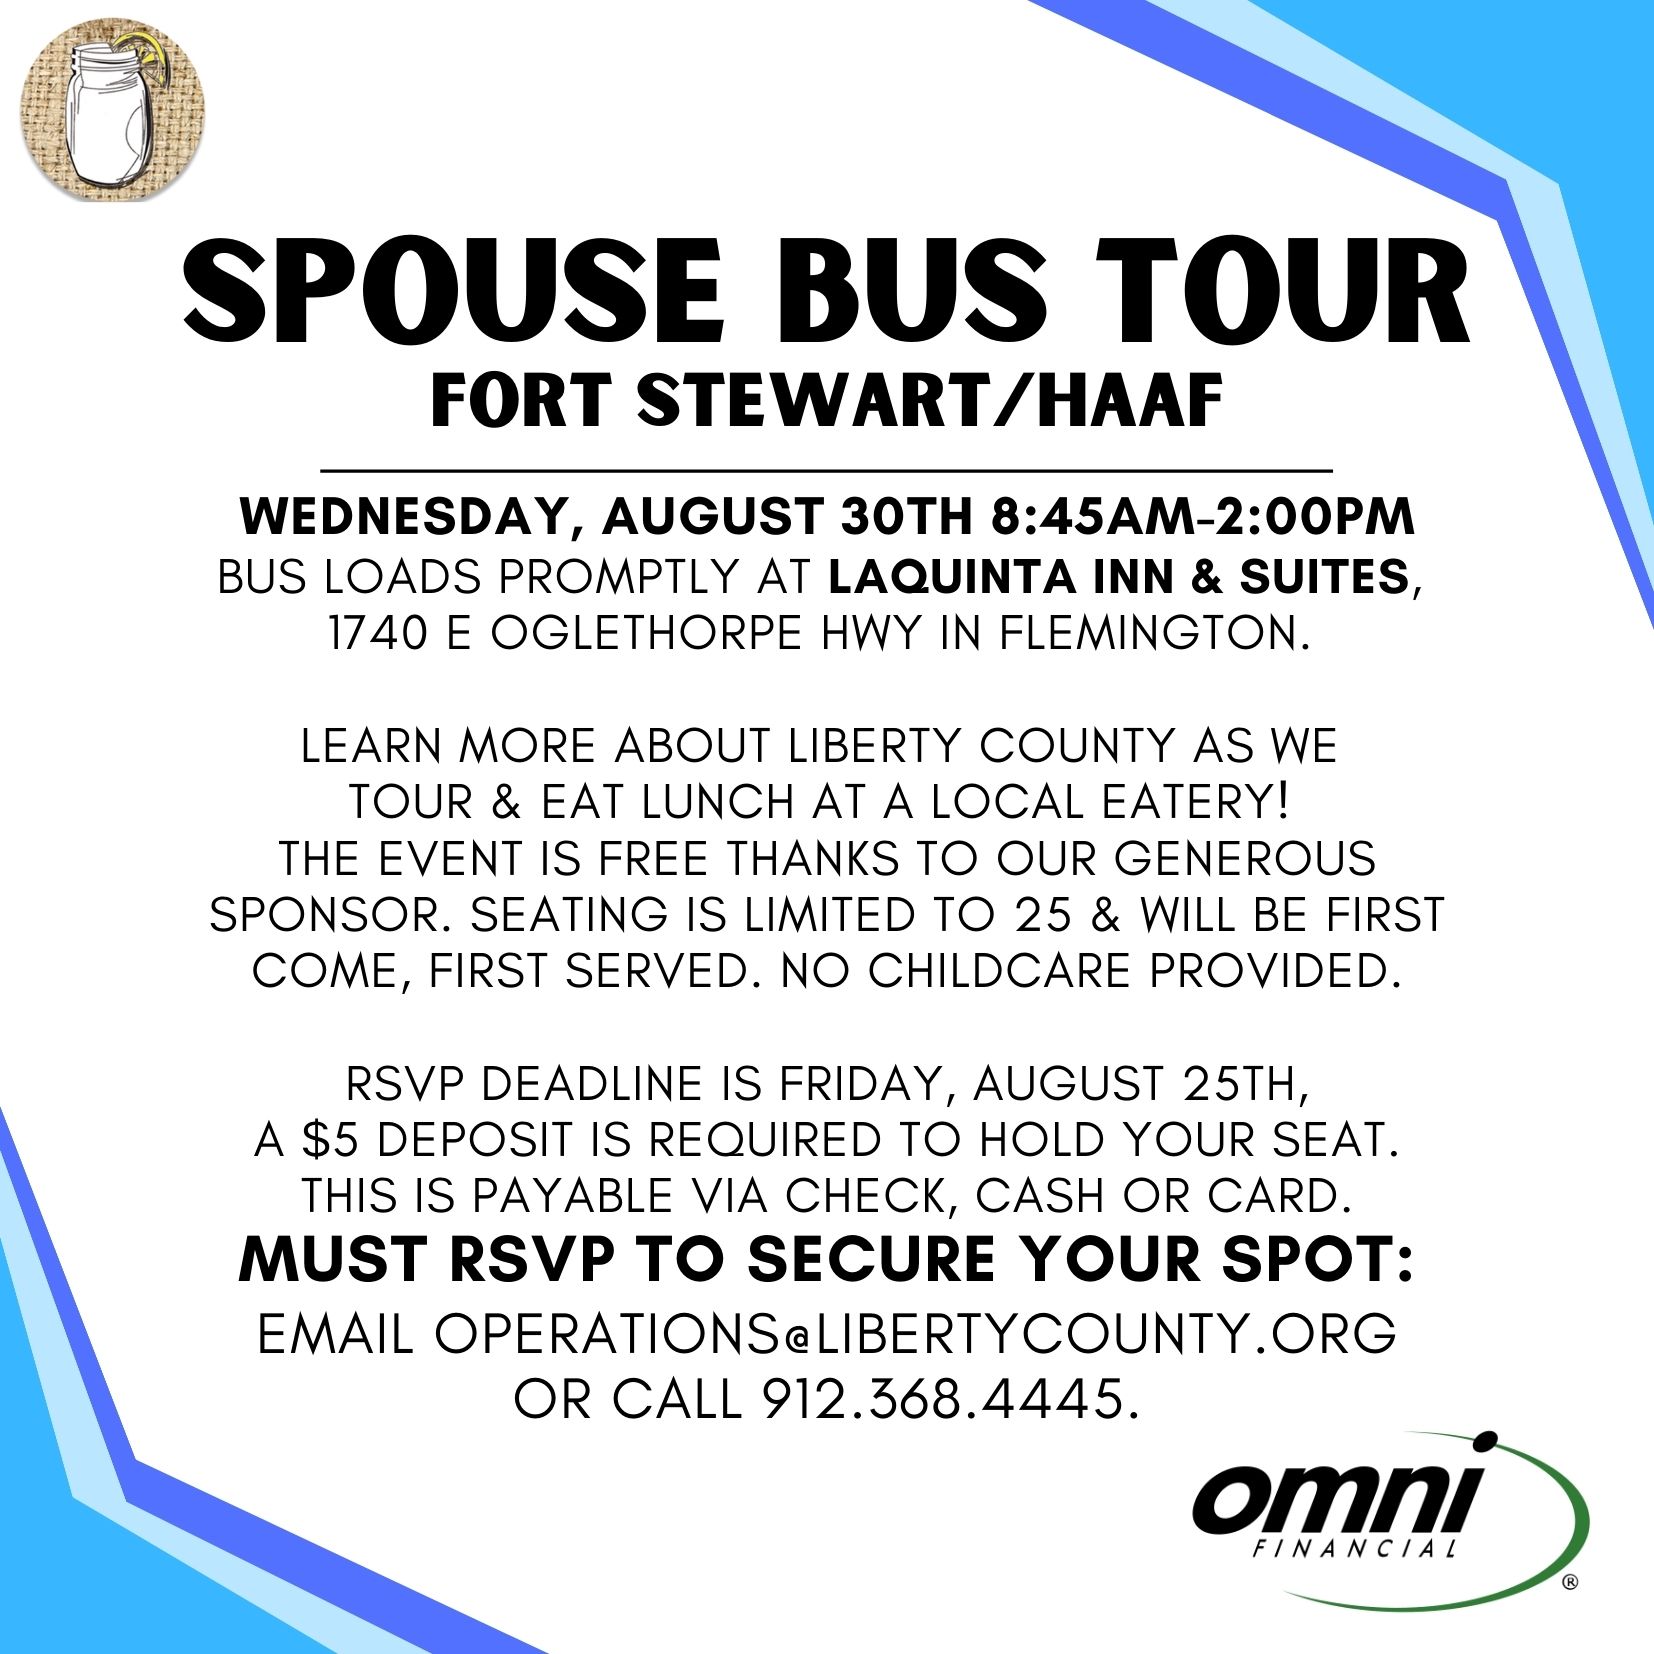 Spouse Bus Tour flyer